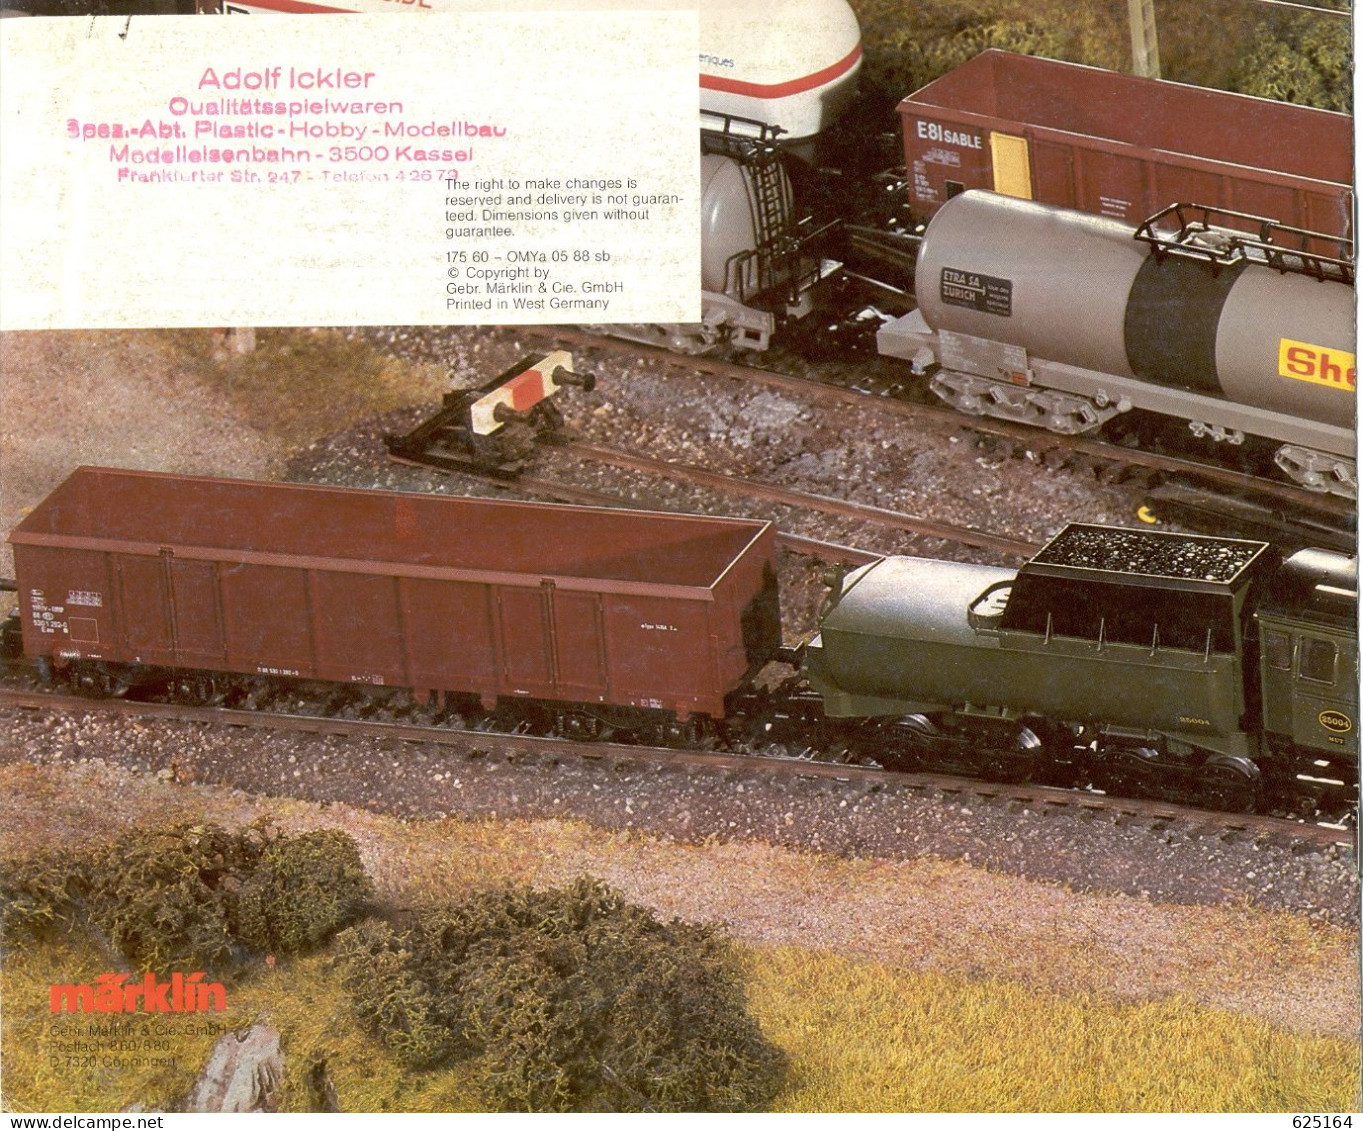 CatalogueMärklin 1988/89 Export Modelle Maquettes Exportation - En Allemand, Anglais Et Français - Français